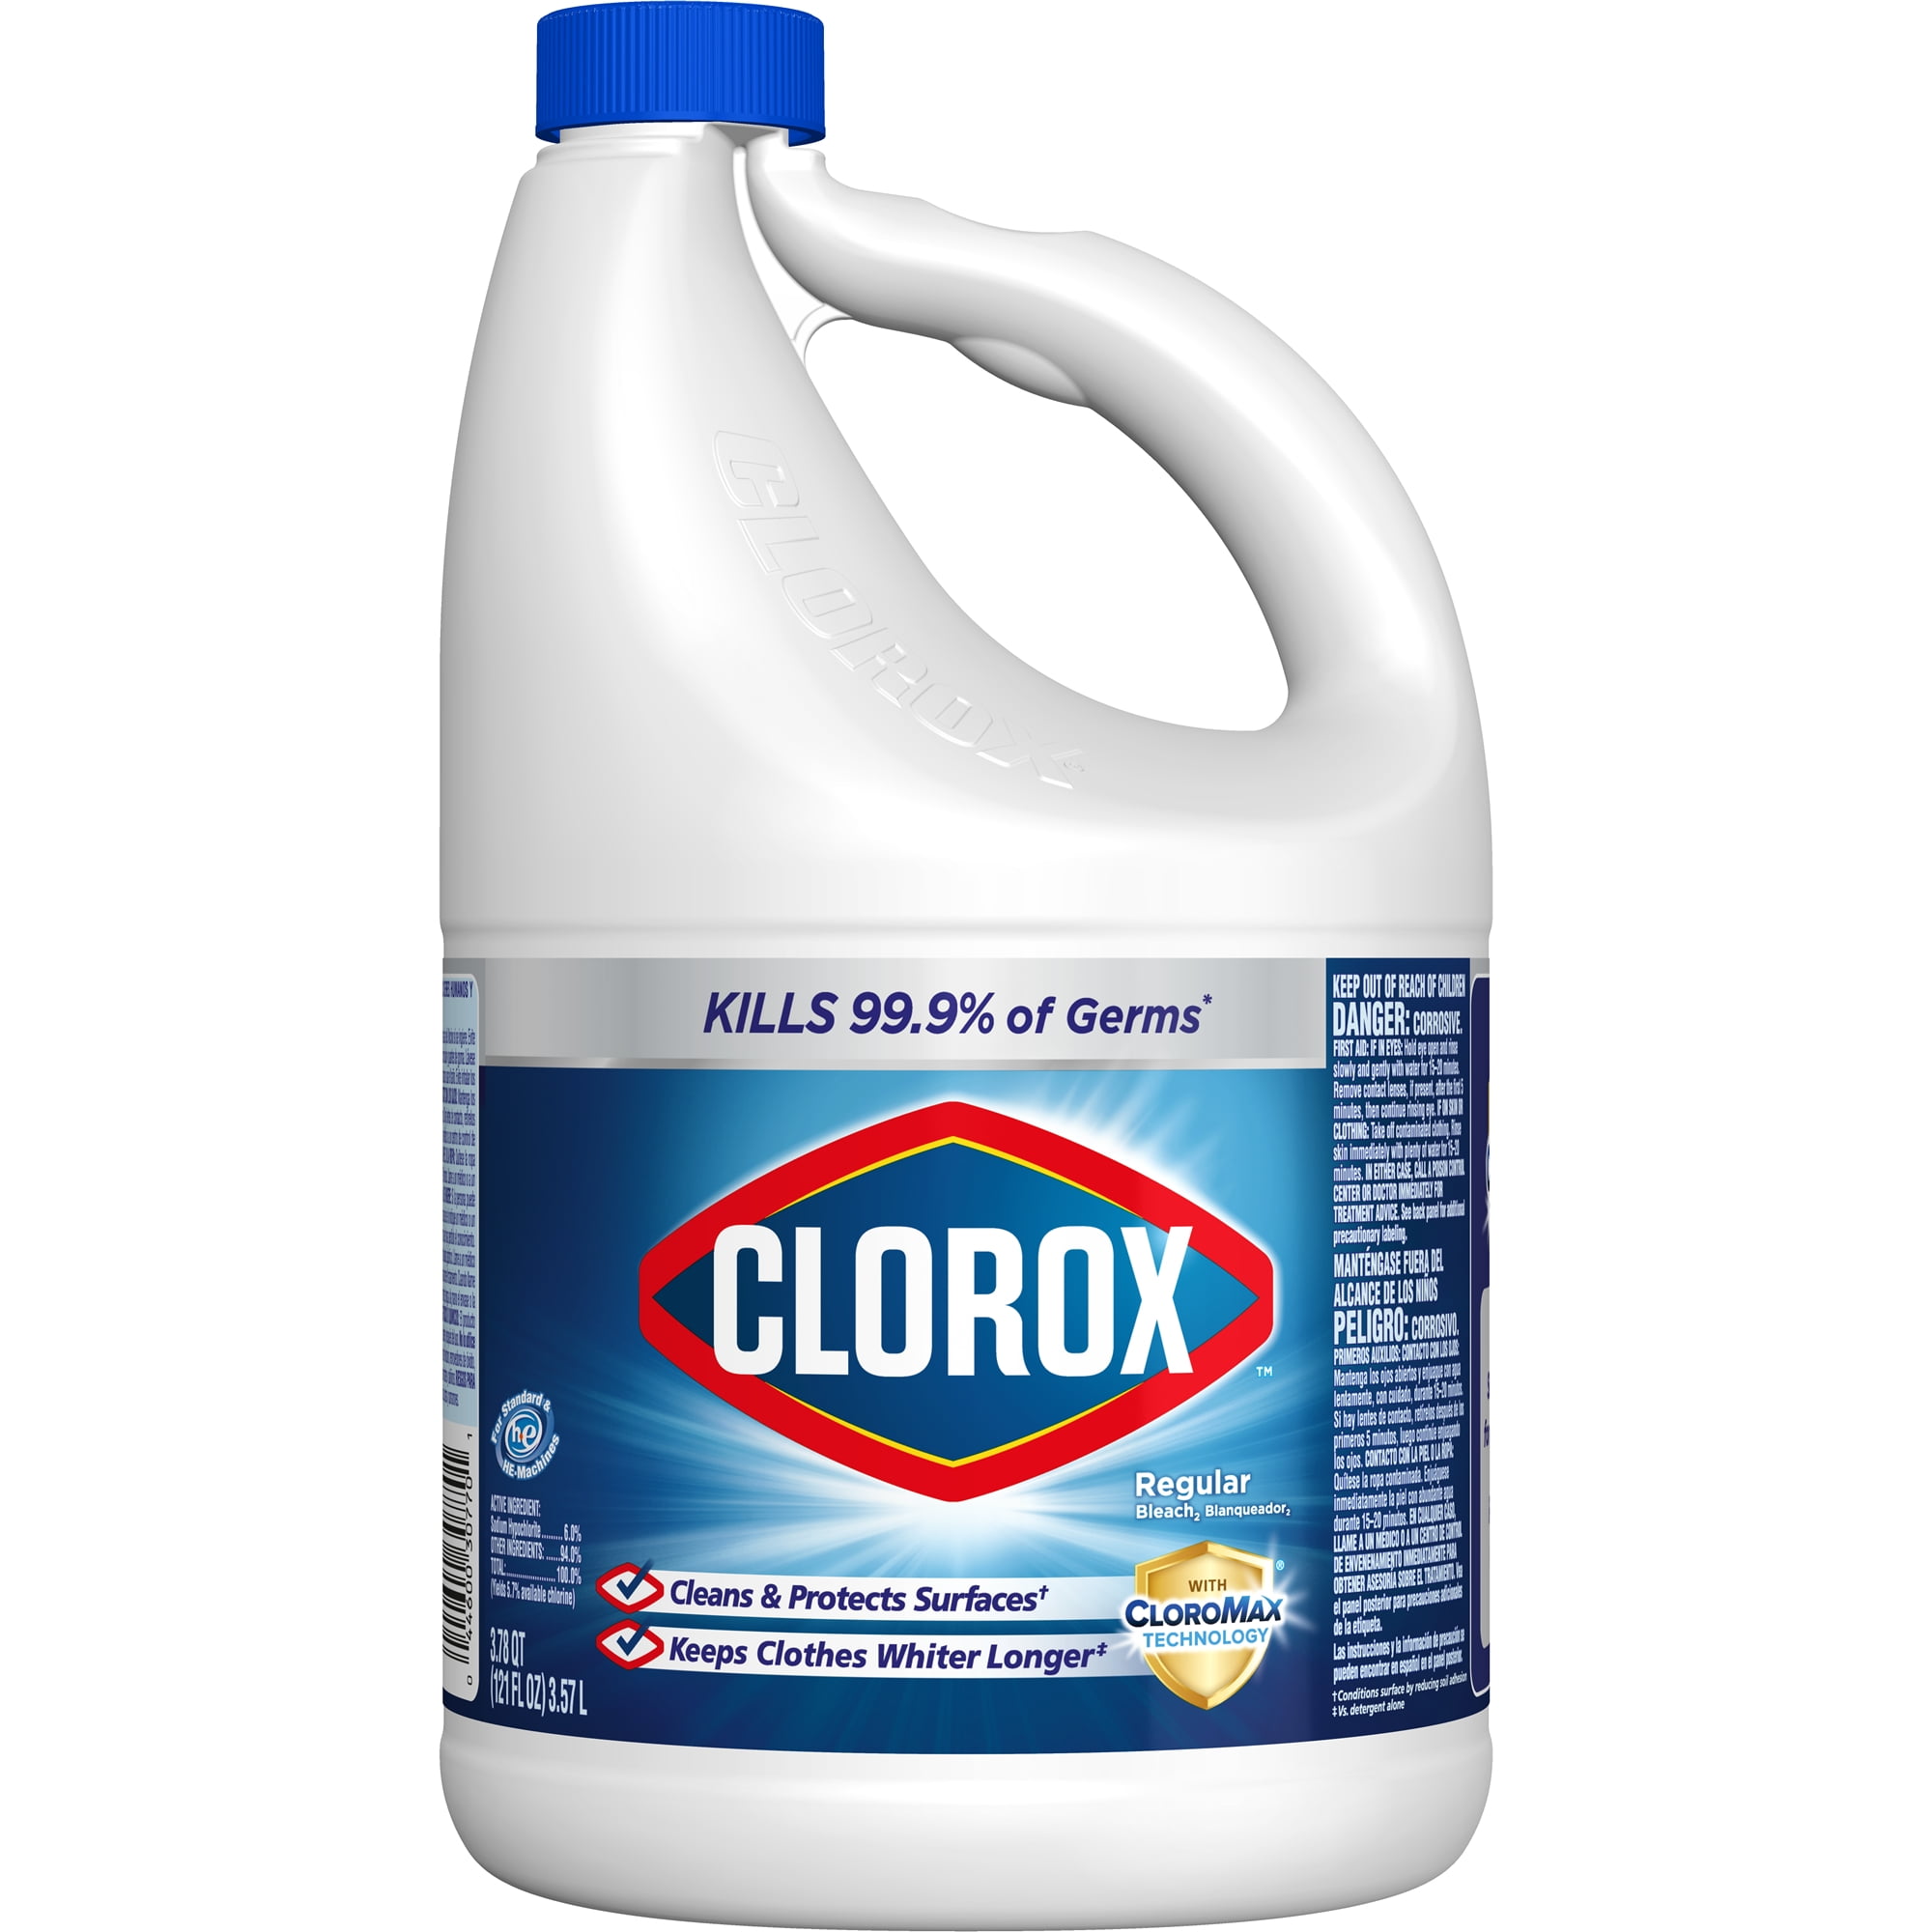 Clorox Regular Liquid Bleach 121 Oz Bottle Walmart Com